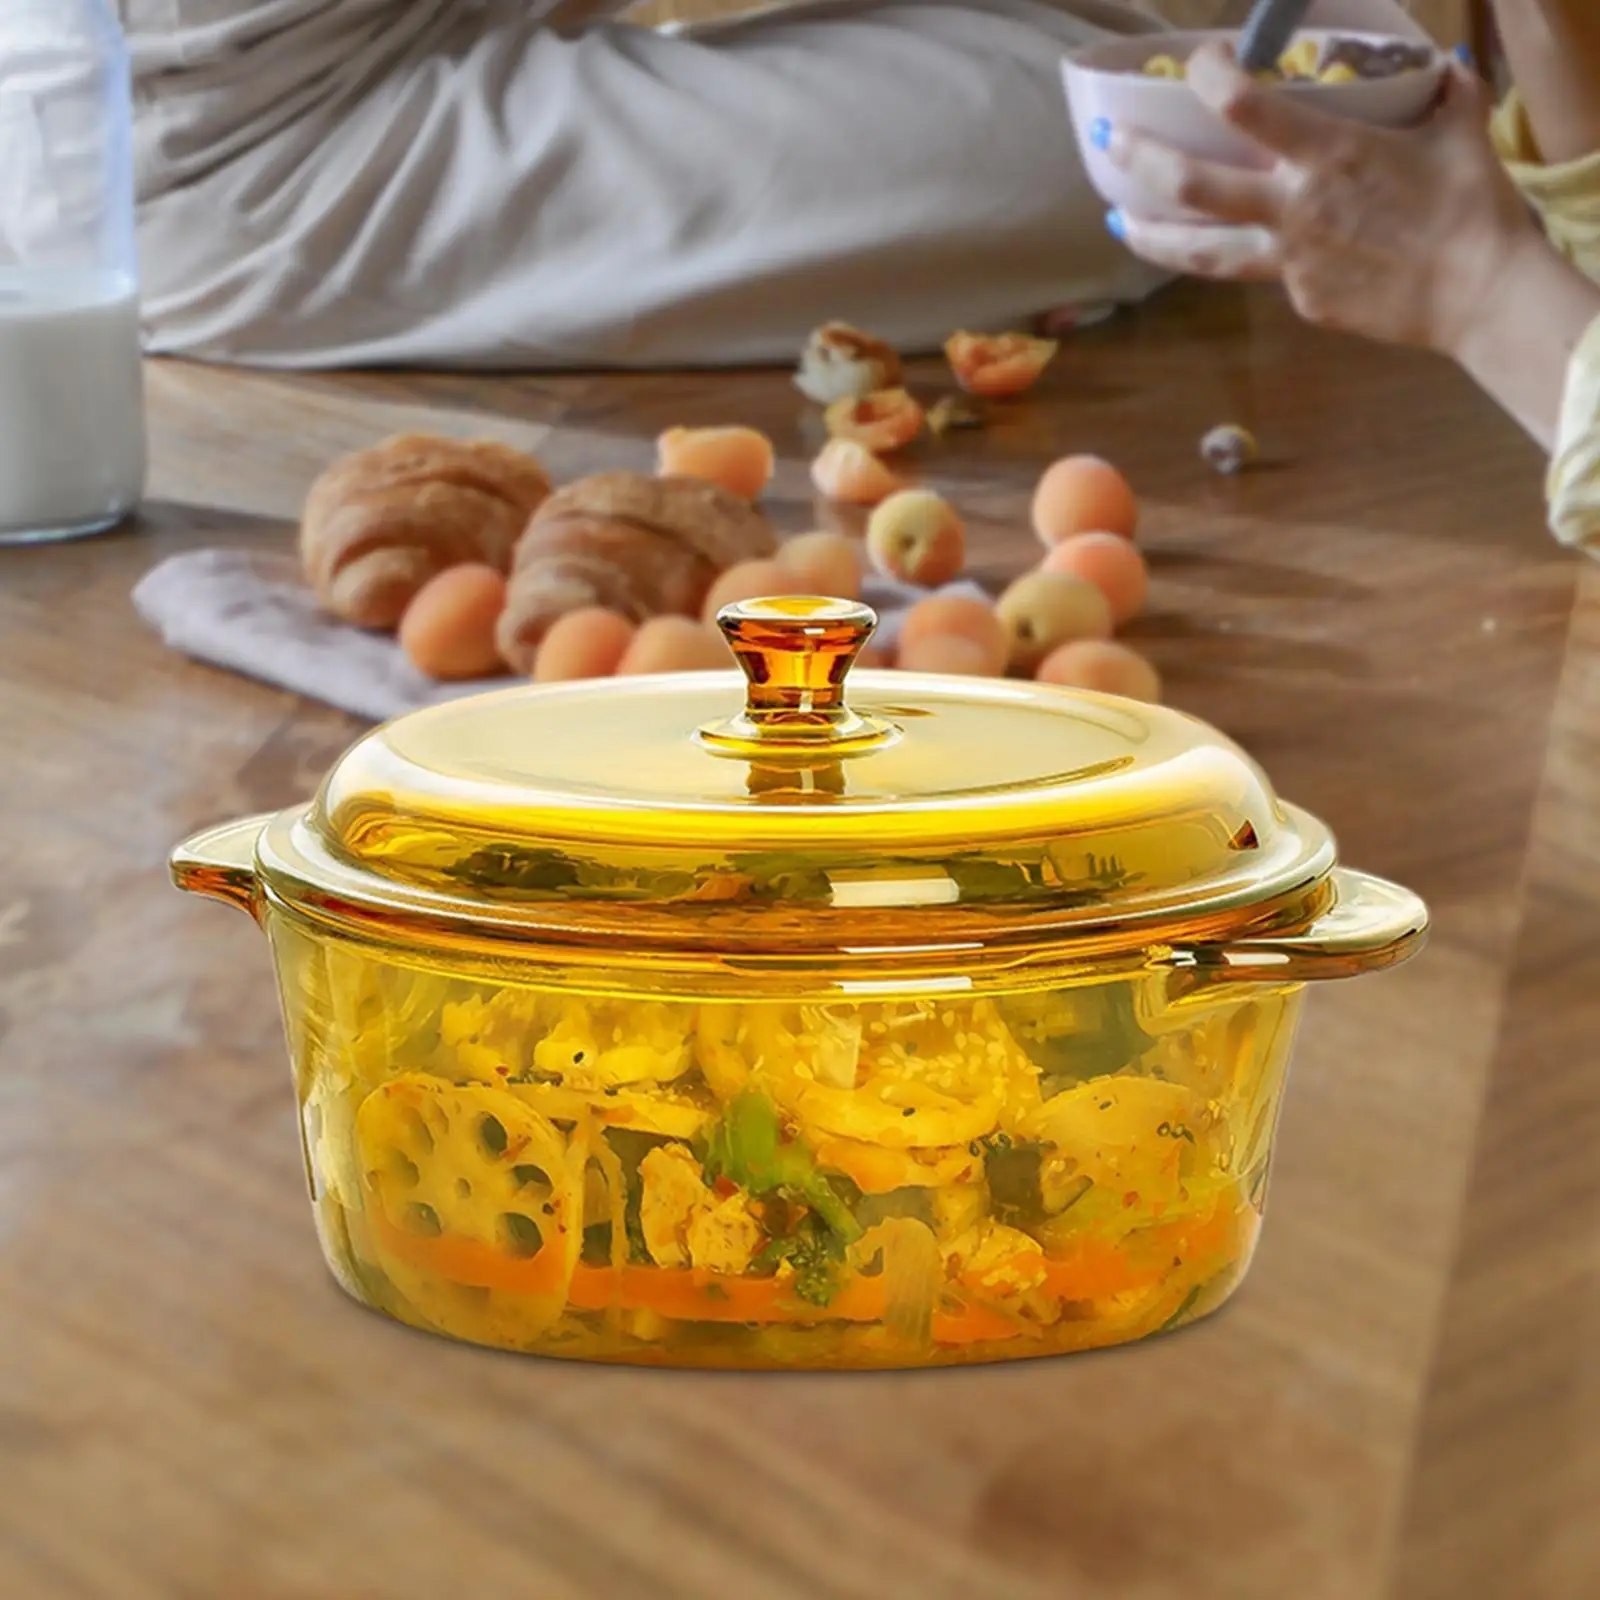 Heat Resistant Noodles Bowl Serving Bowl Multipurpose Portable Freezer Glass Salad Bowl for Dessert Sauces Egg Cereal Snack